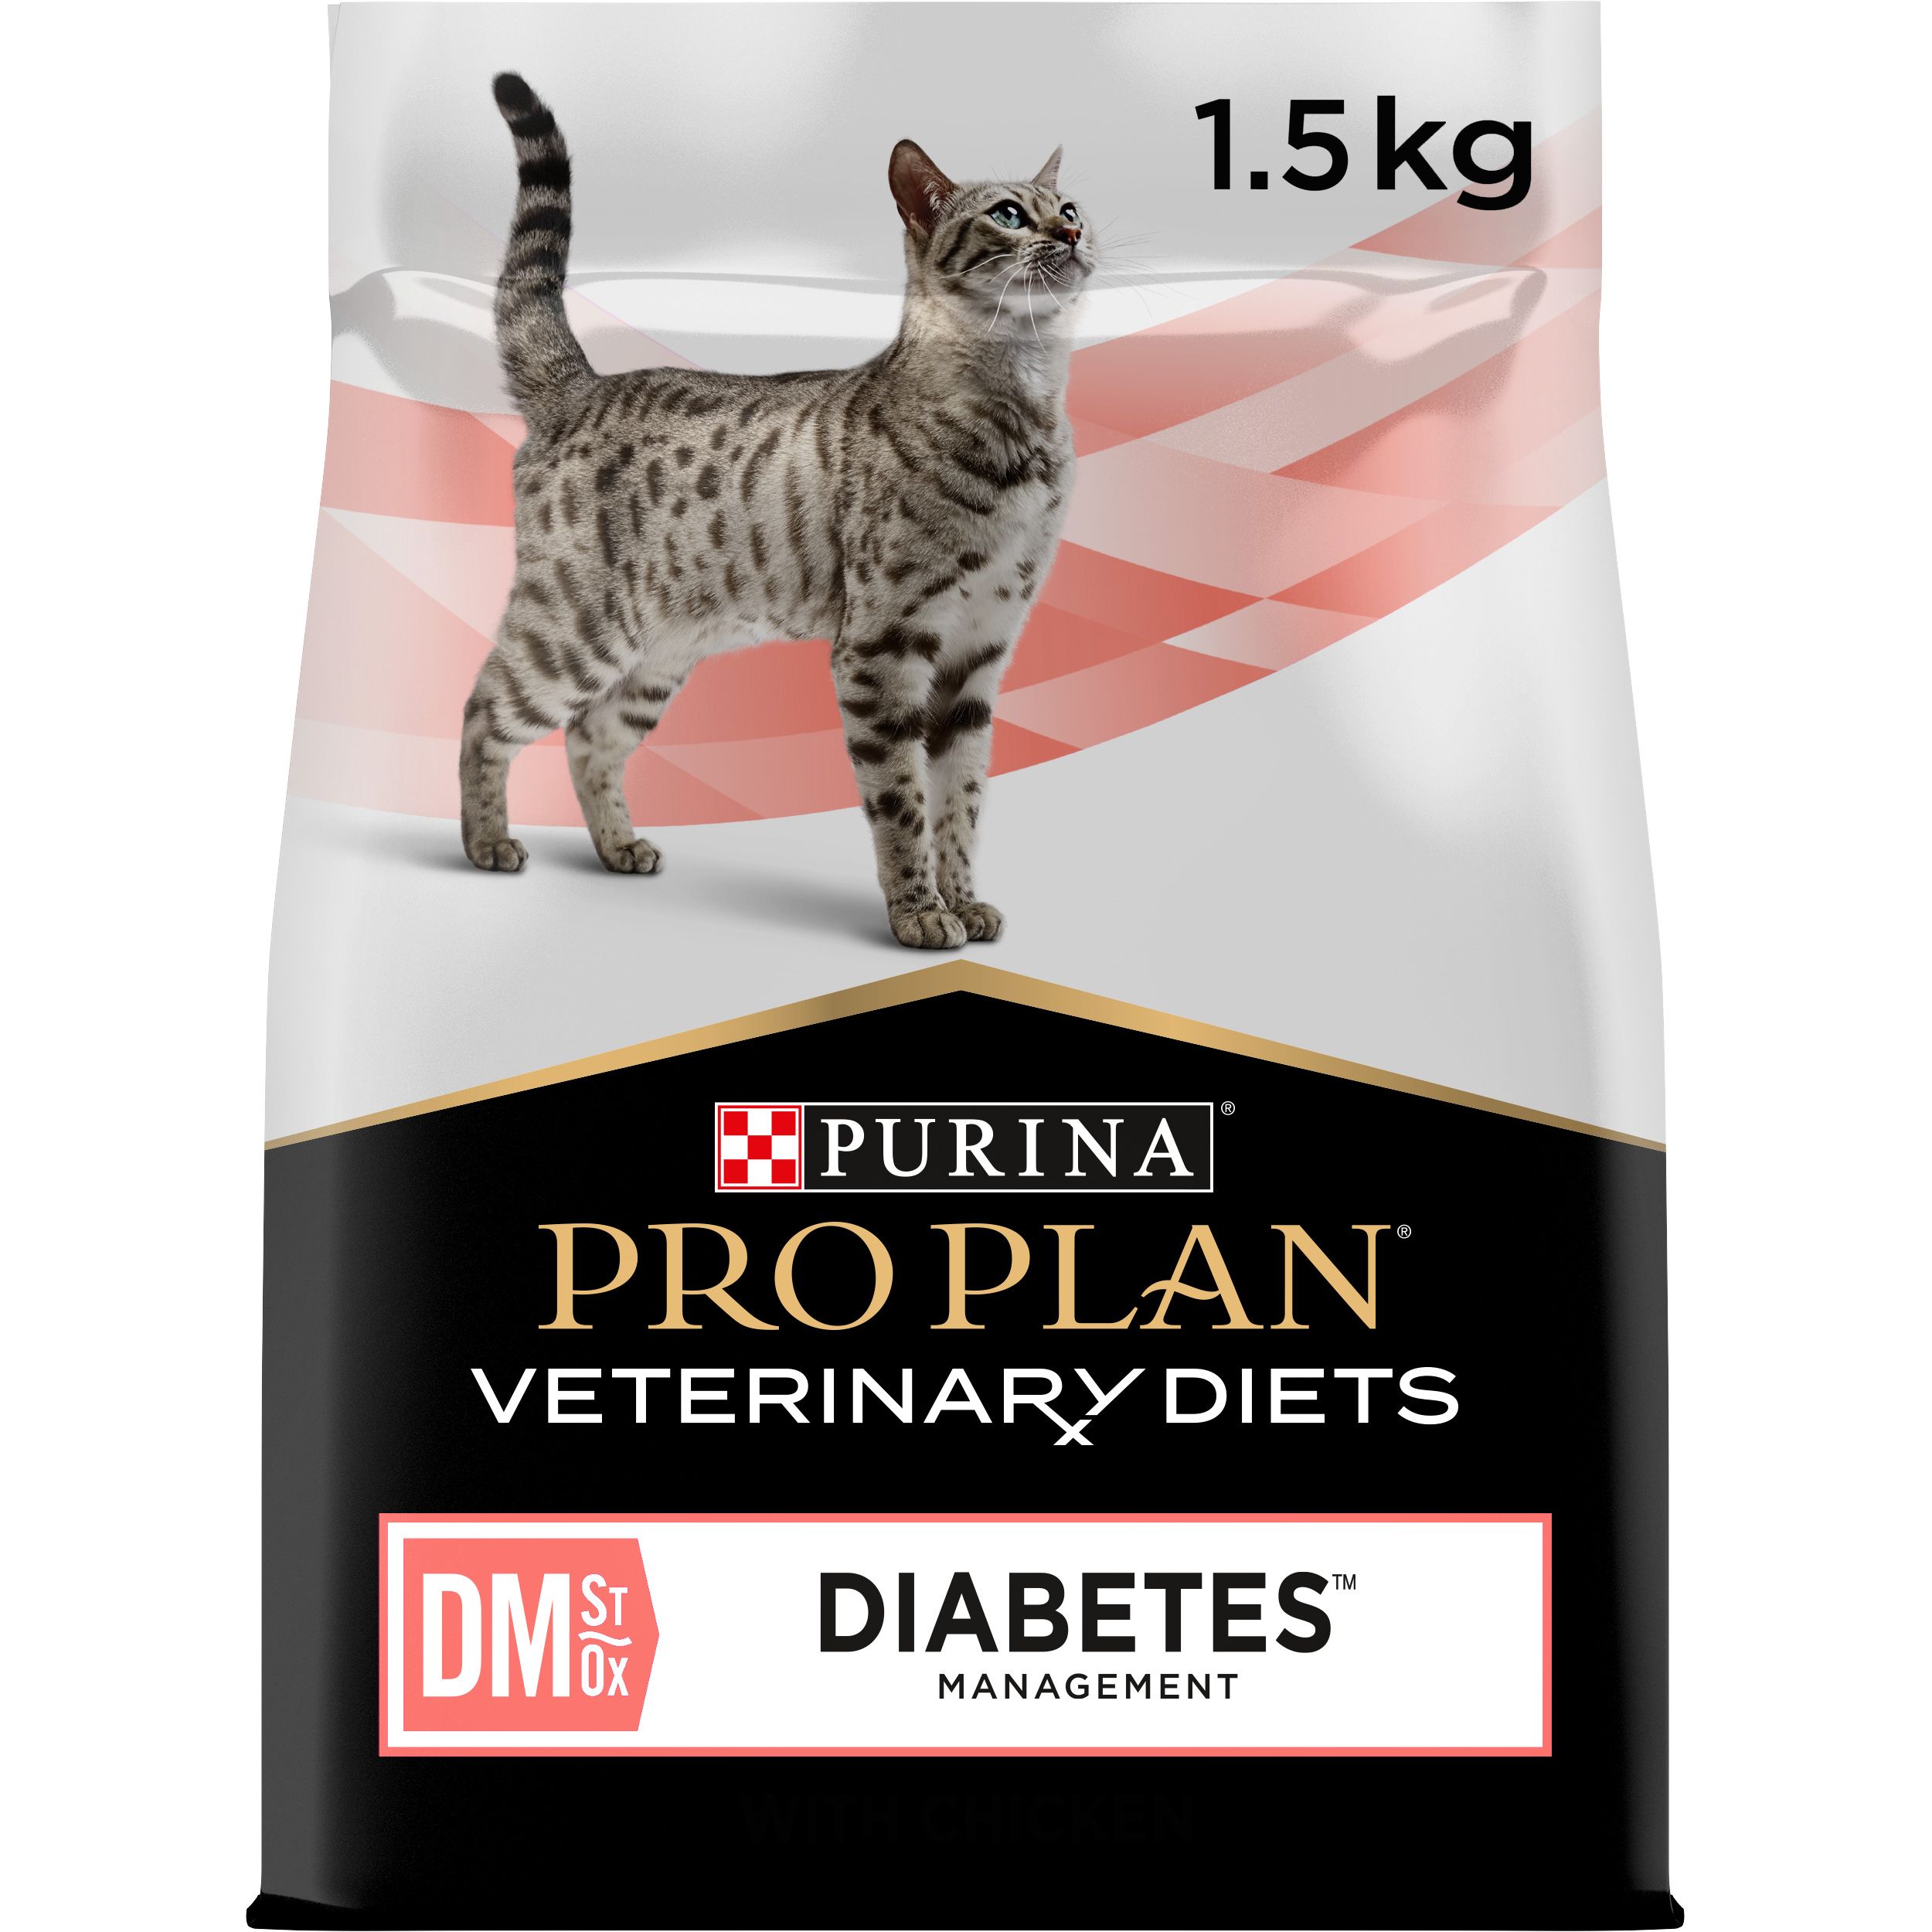 Сухой диетический корм для взрослых кошек Purina Pro Plan Veterinary Diets DM ST/OX Diabetes Managment для регулирования поступления глюкозы 1.5 кг - фото 1